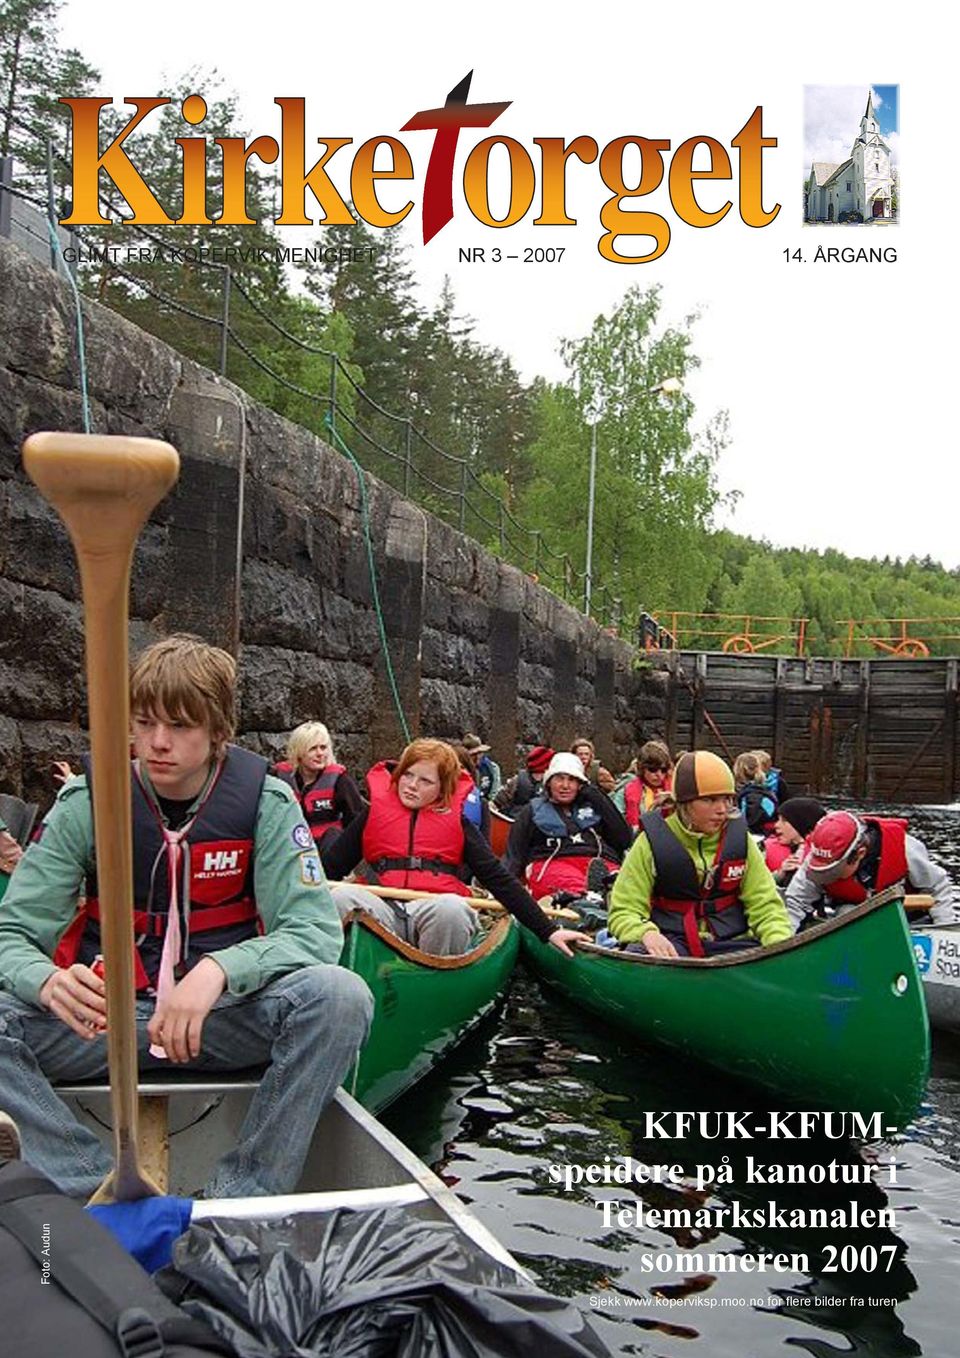 kanotur i Telemarkskanalen sommeren 2007